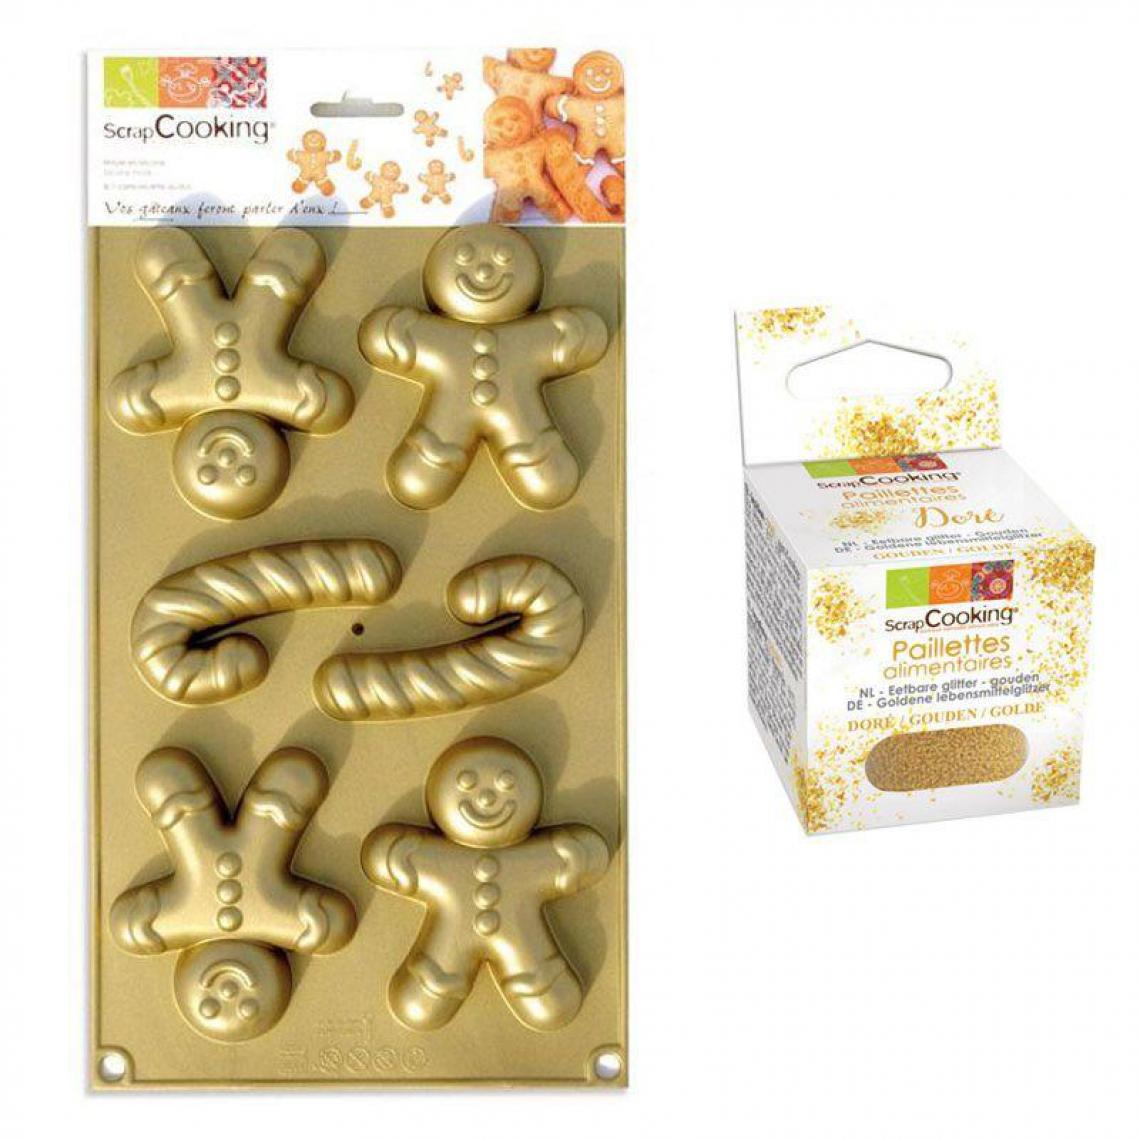 Scrapcooking - Moule en silicone Bonshommes en pain d'épice + paillettes dorées - Kits créatifs